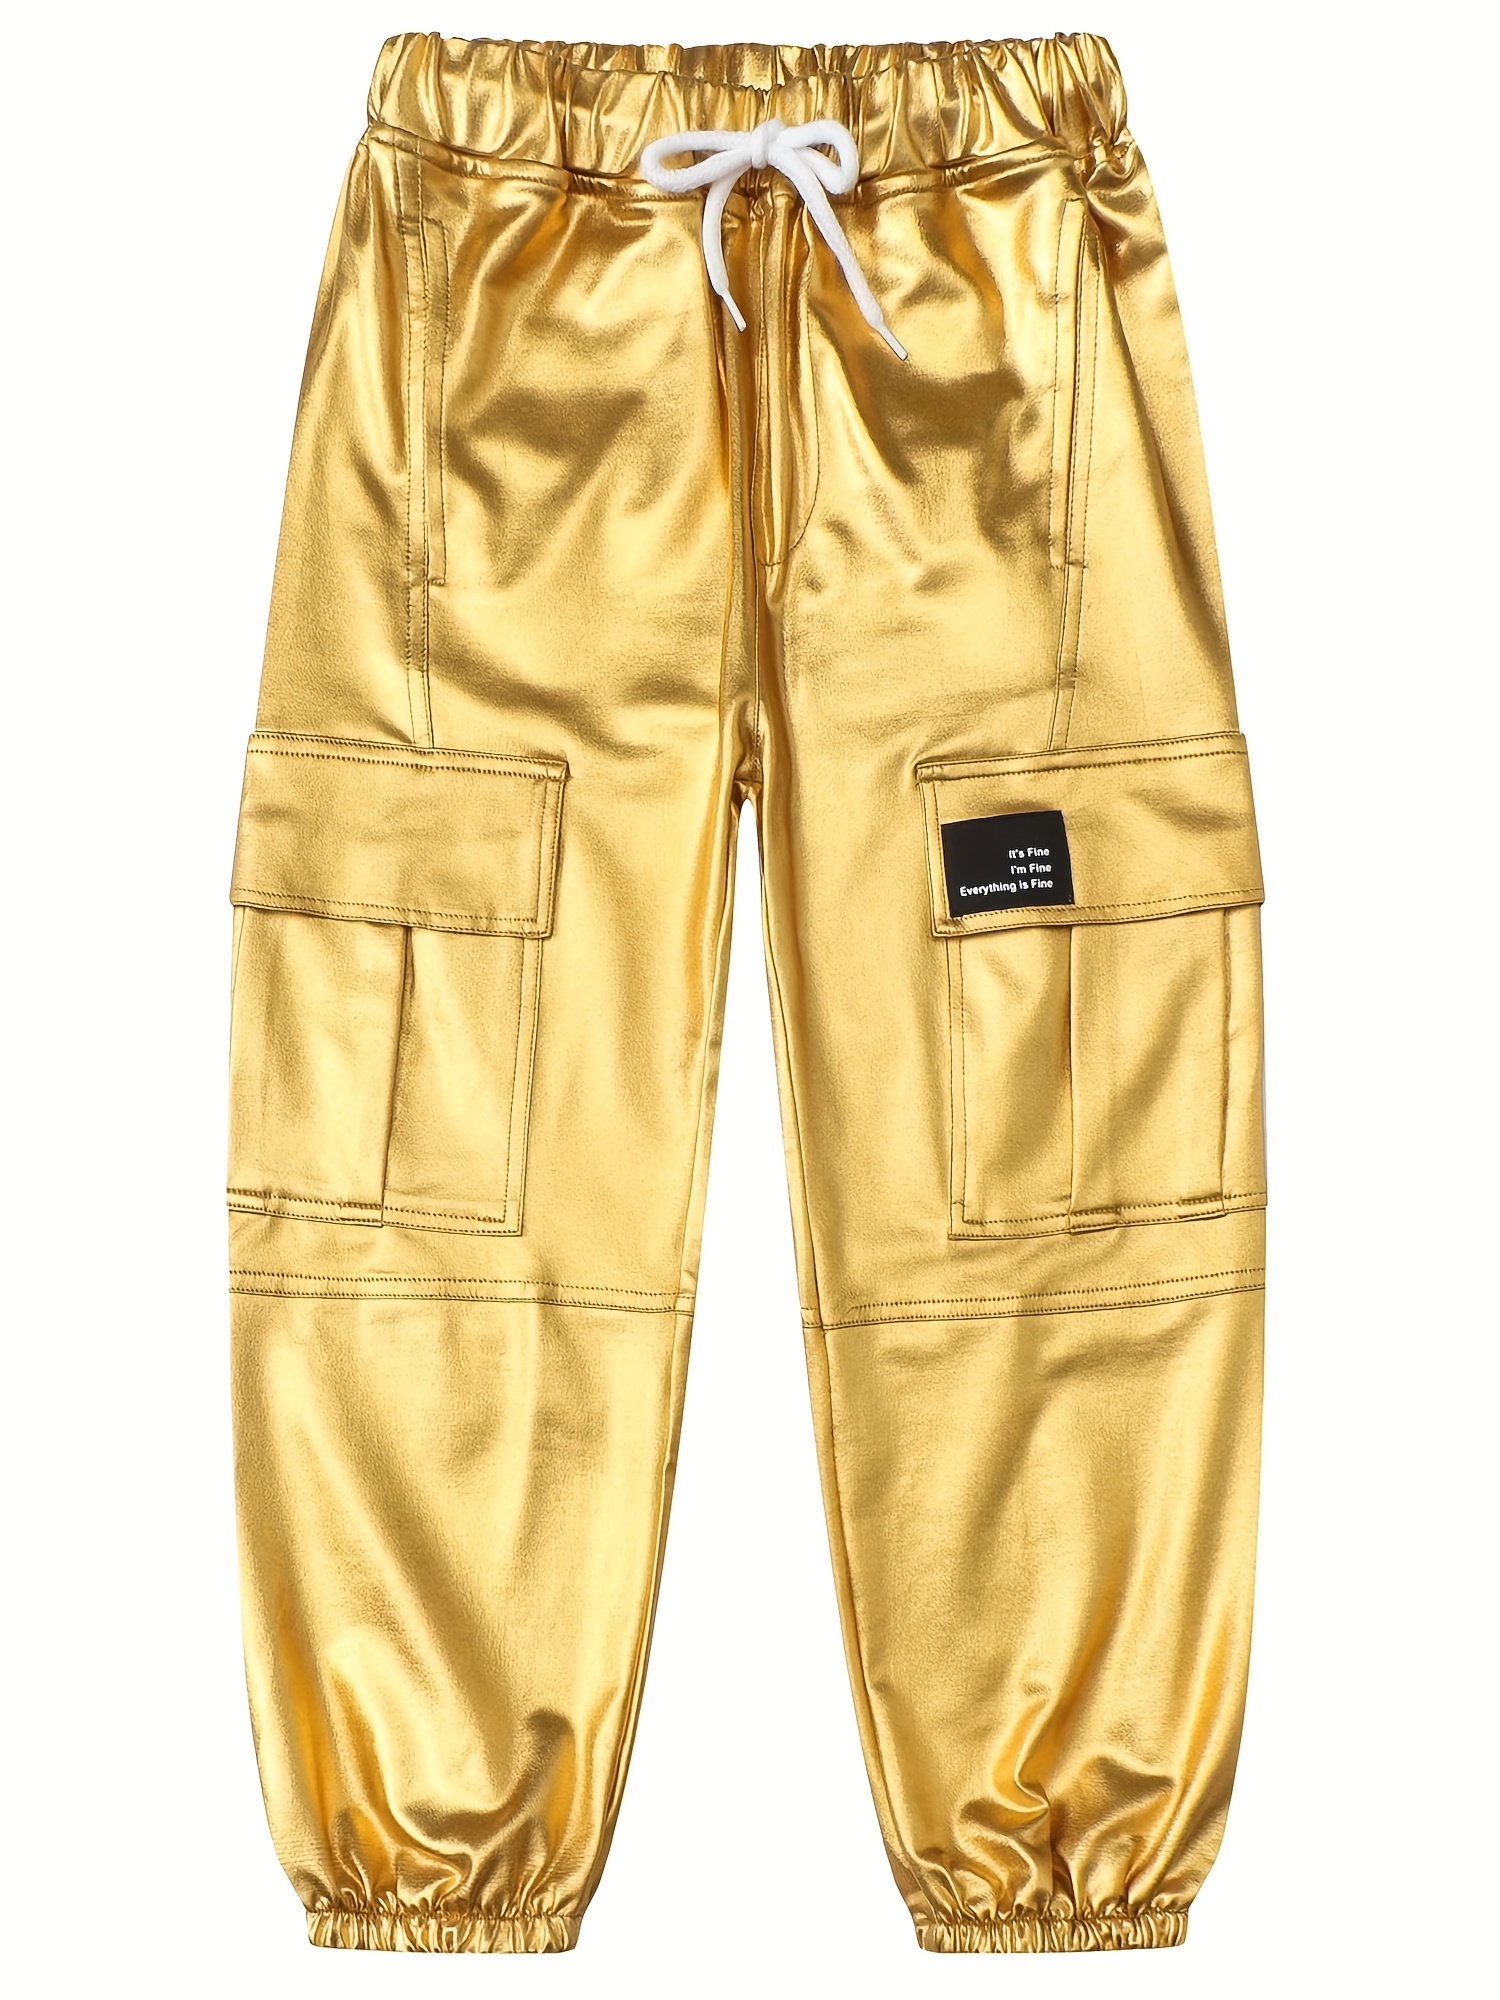 Boys And Girls Shiny Cargo Pants Street Style Elastic Belt Multi-pocket  Fashion Jogger Pants